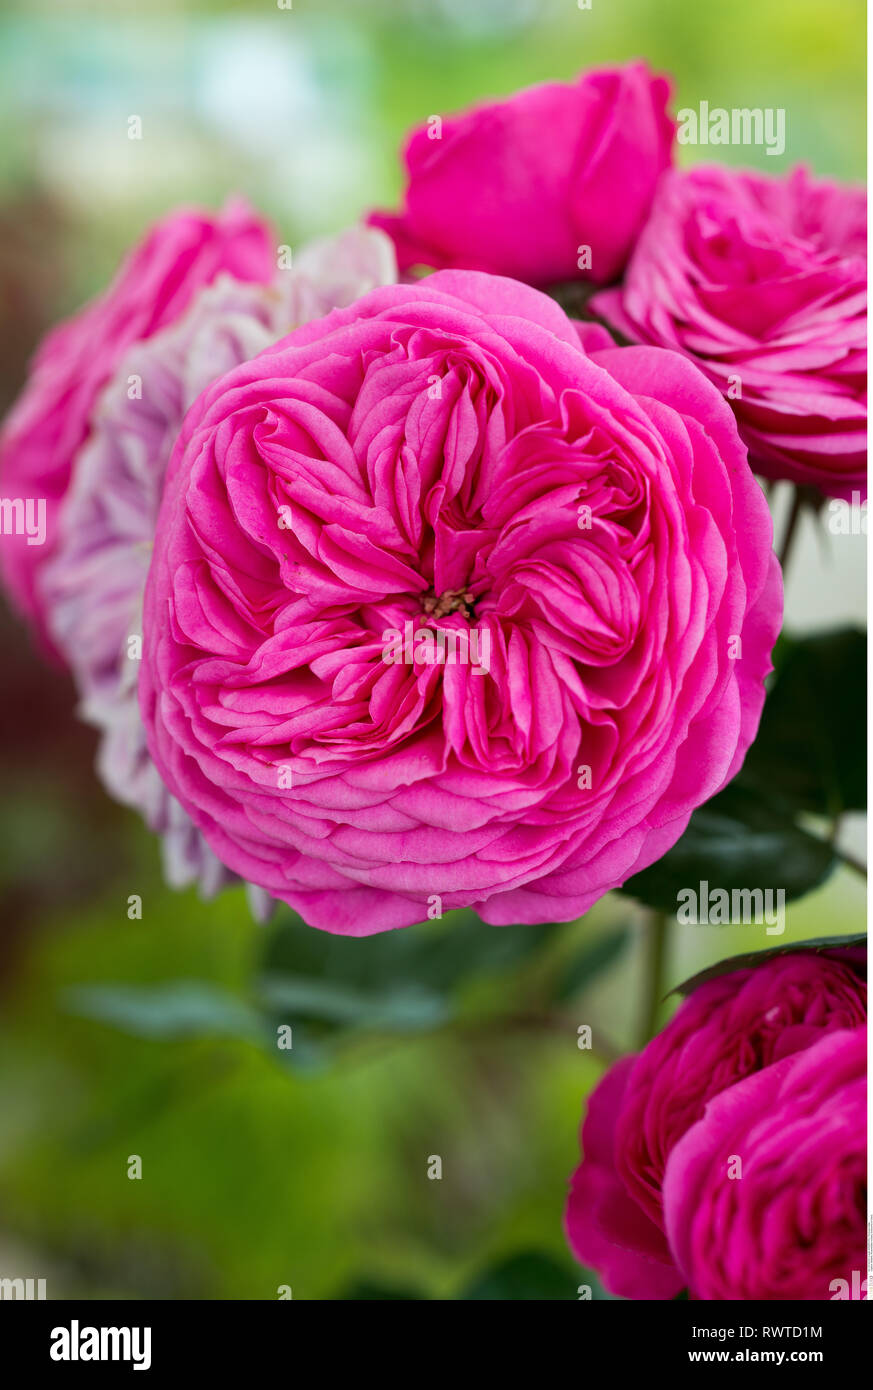 La botanica, la fioritura delle rose, attenzione! Per Greetingcard-Use / Postcard-Use nei Paesi di lingua tedesca talune restrizioni possono applicare Foto Stock